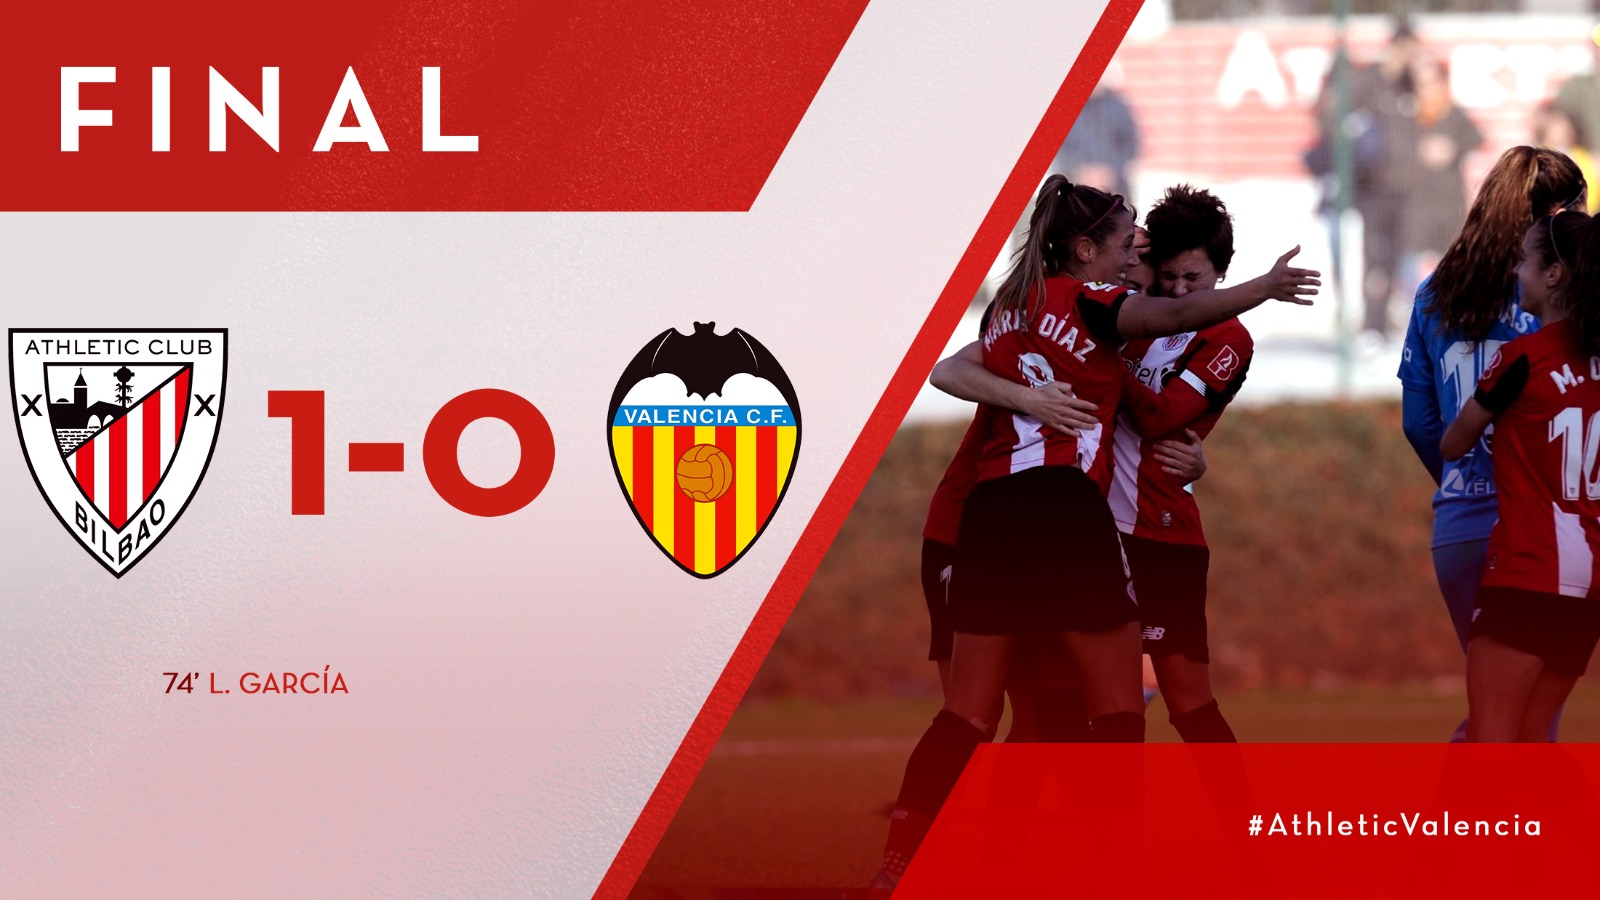 Athletic Club1-0 Valencia CF